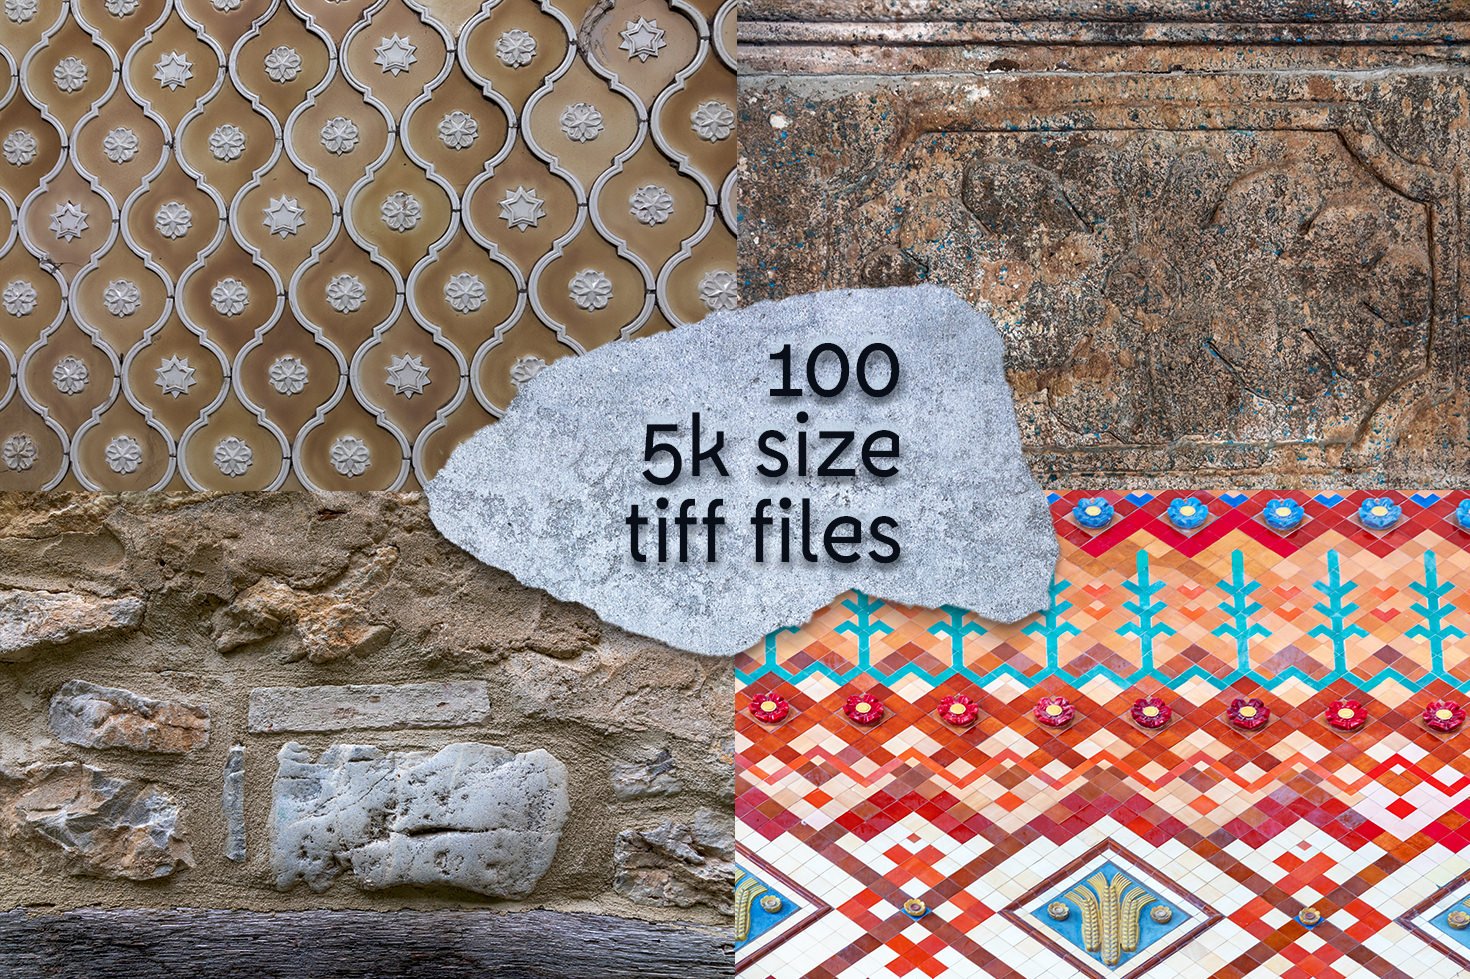 Stone Age - 100 stone textures